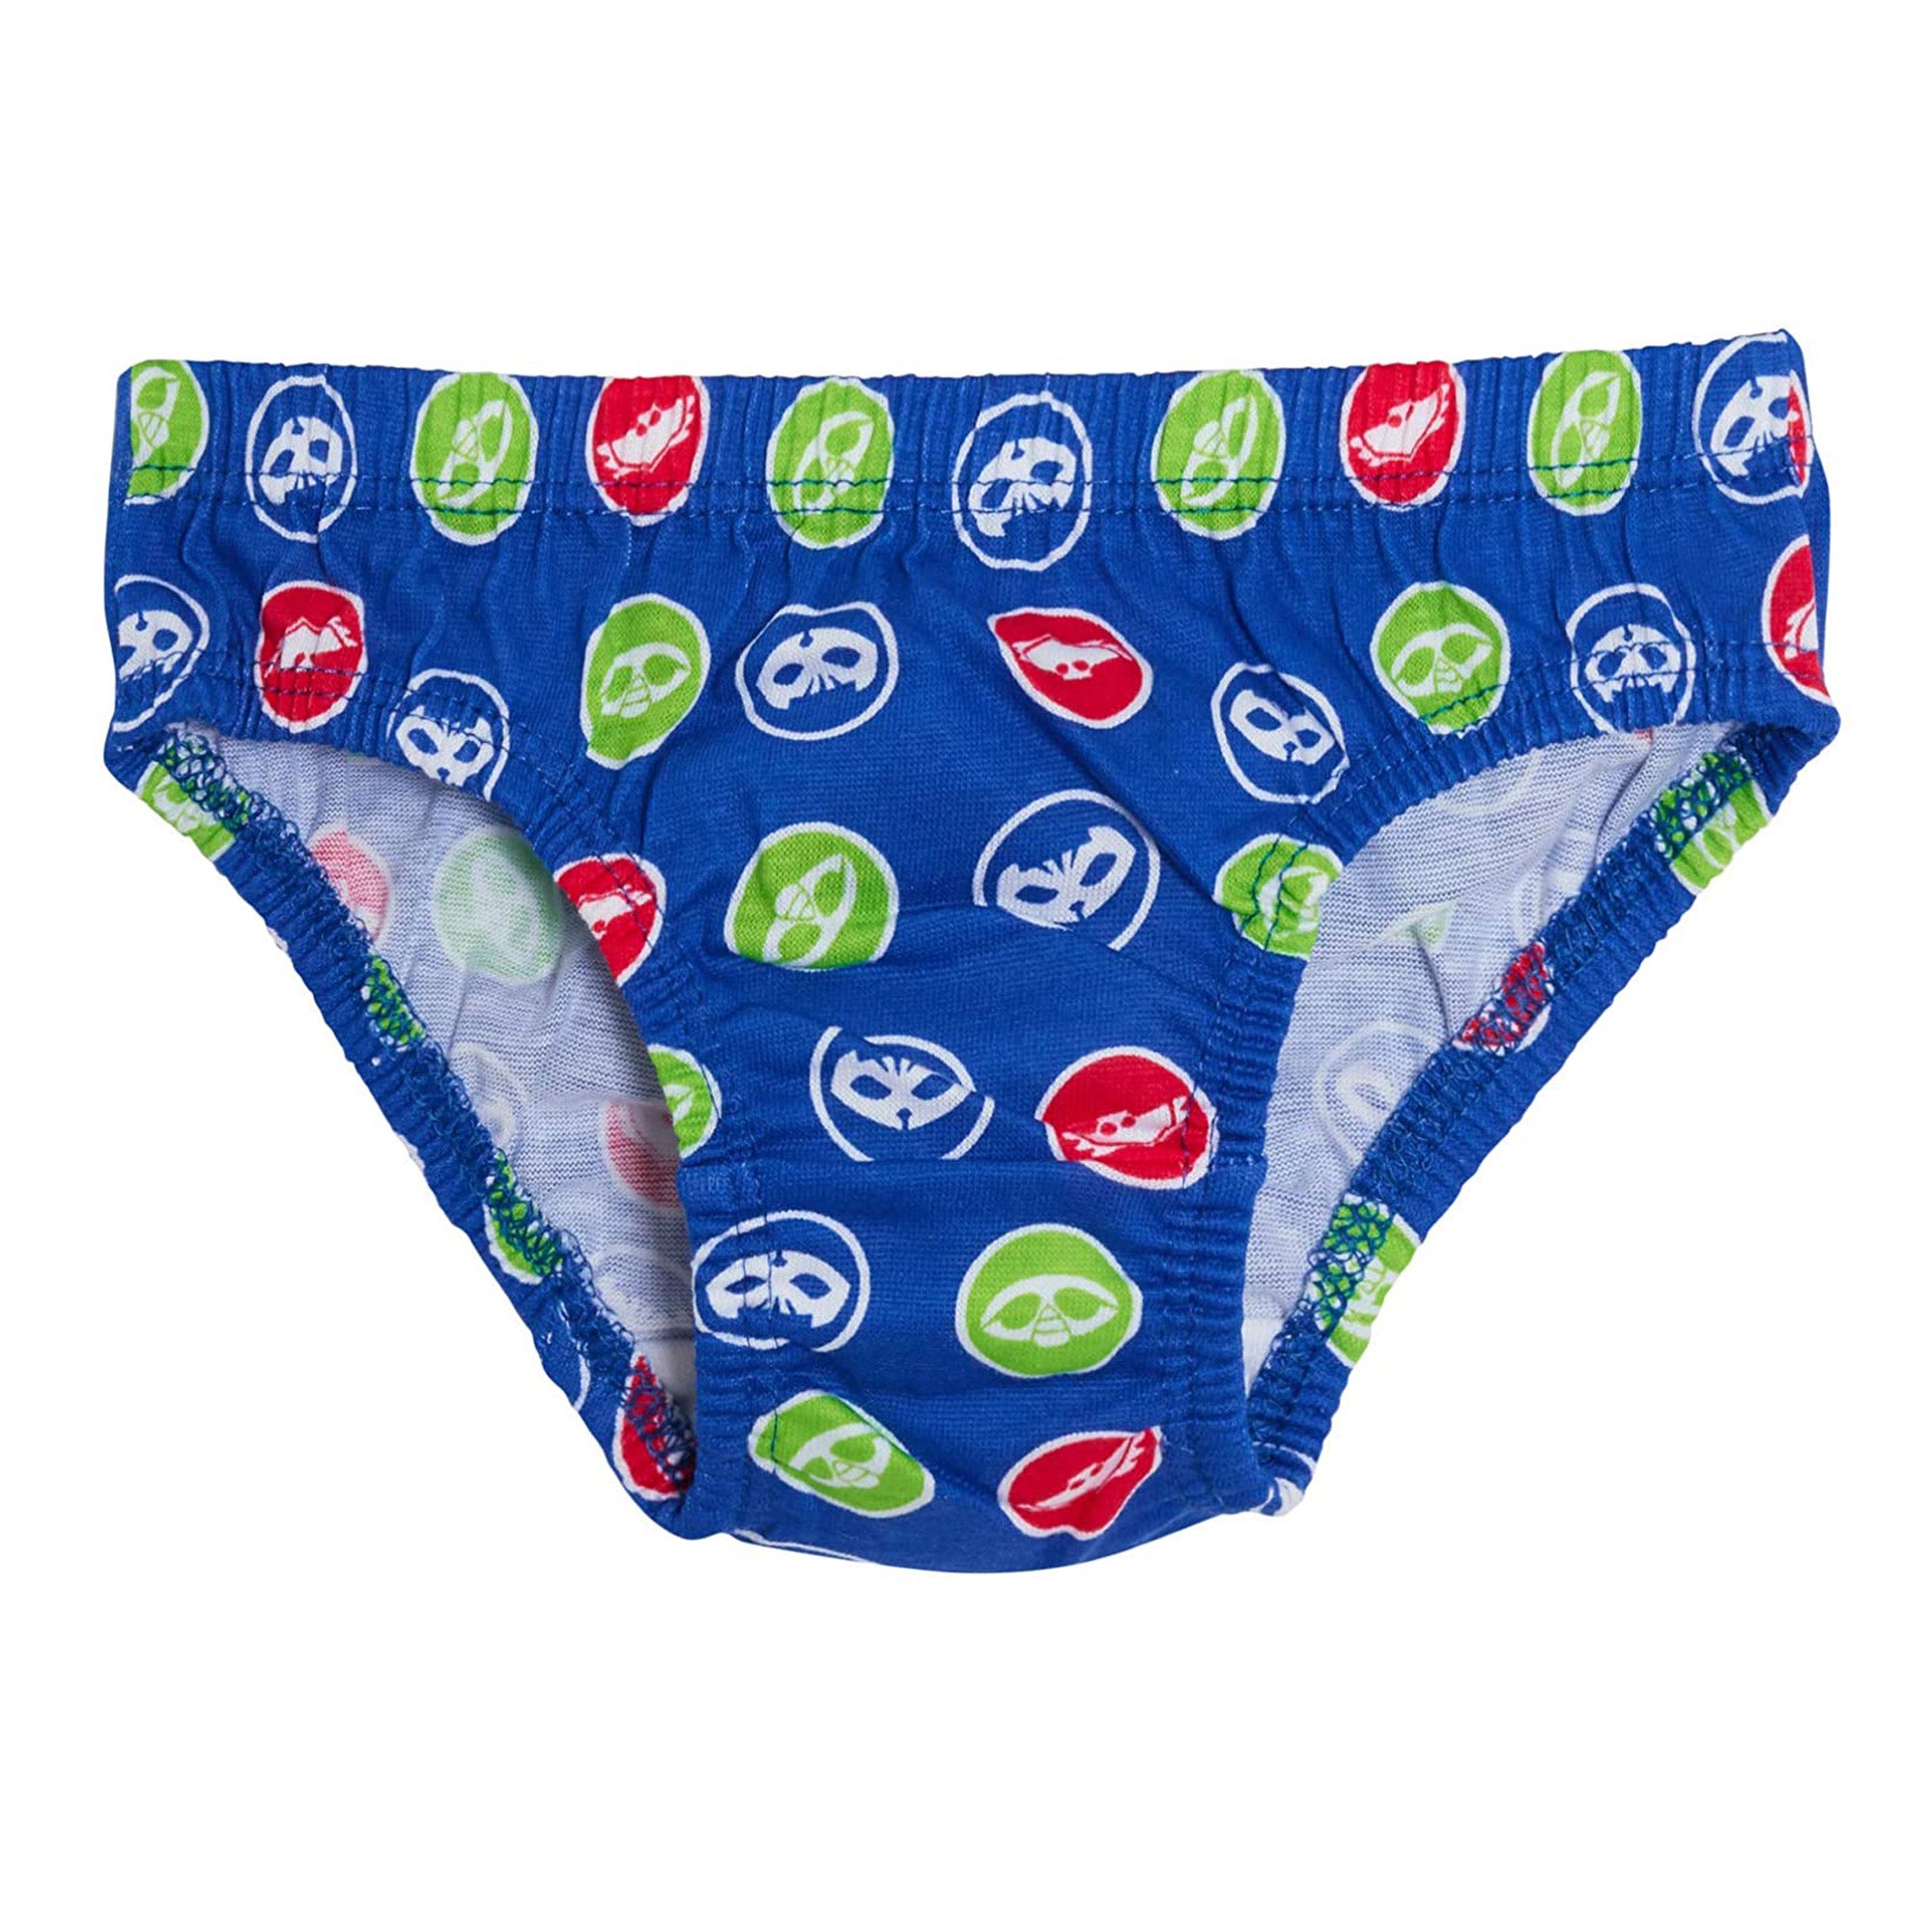 PJ Masks Kids Underwear Briefs Pants Multicolour